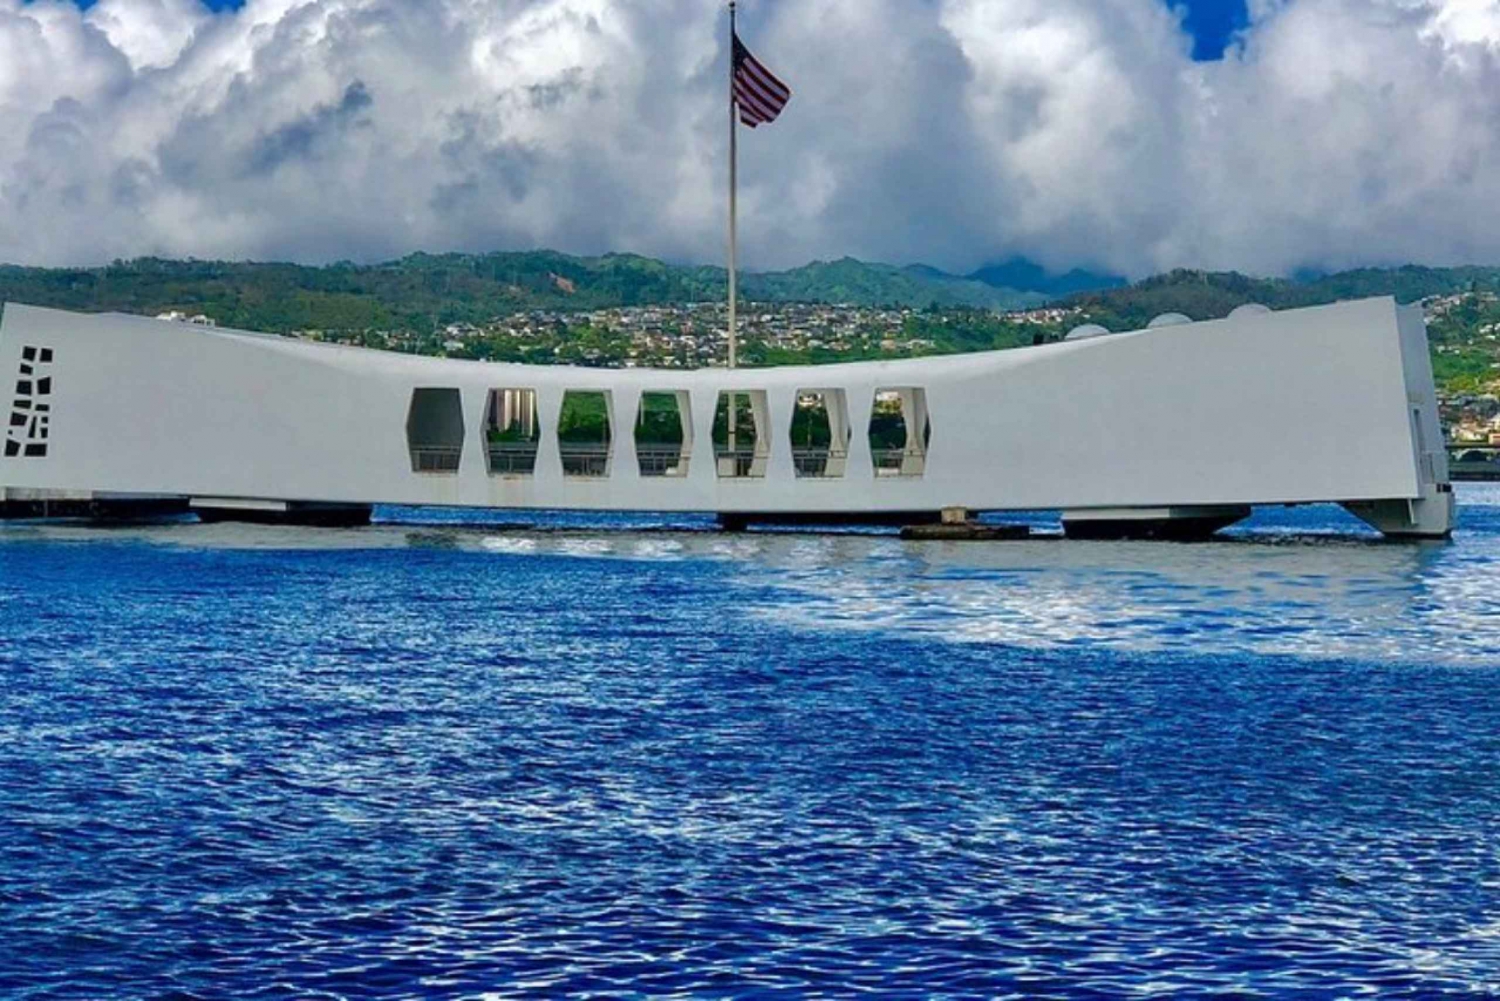 Pearl Harbor USS Arizona Memorial Tour